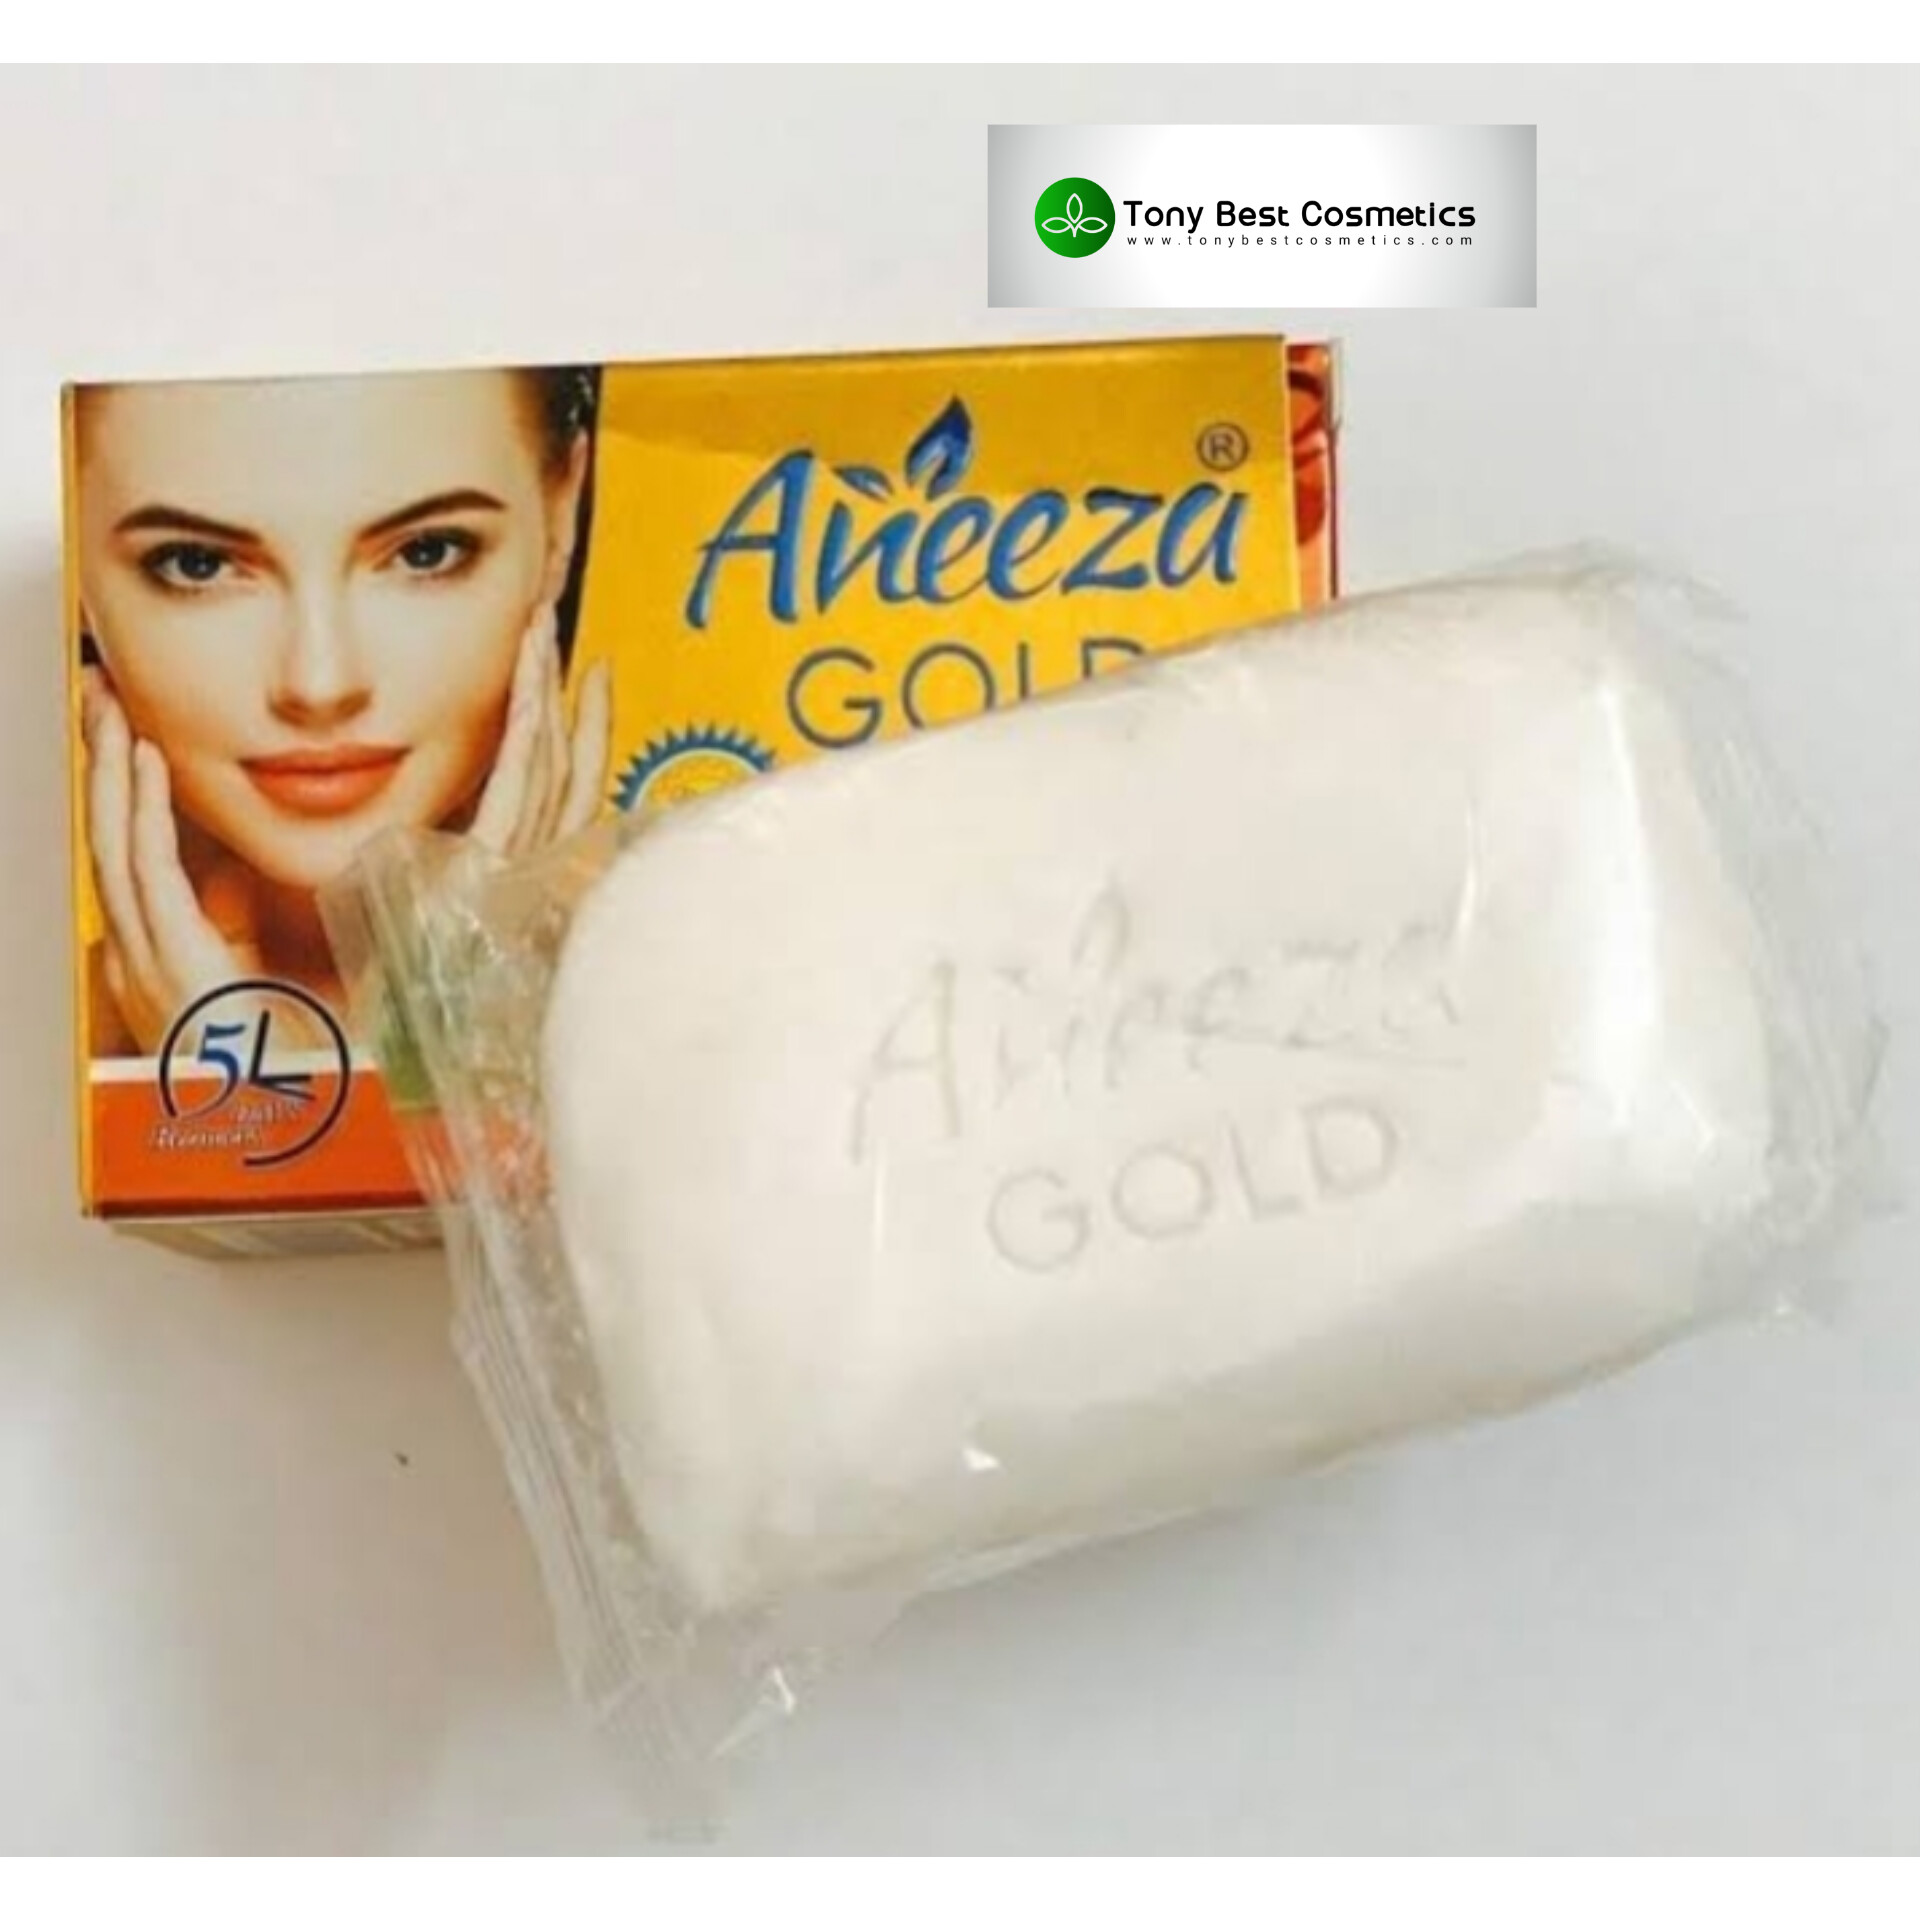 Aneeza_gold_beauty_soap